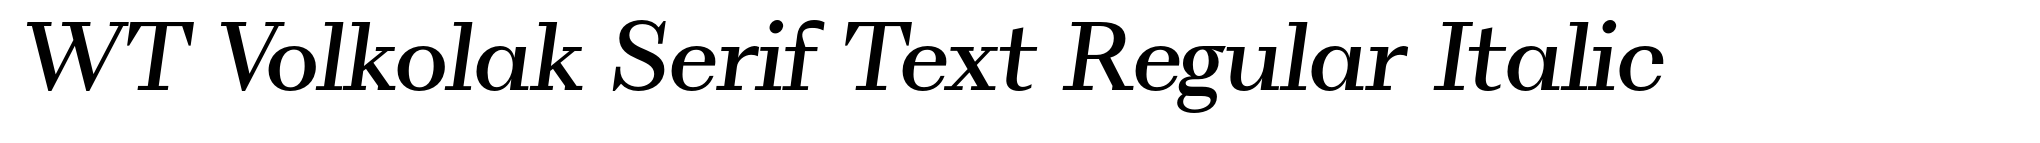 WT Volkolak Serif Text Regular Italic image